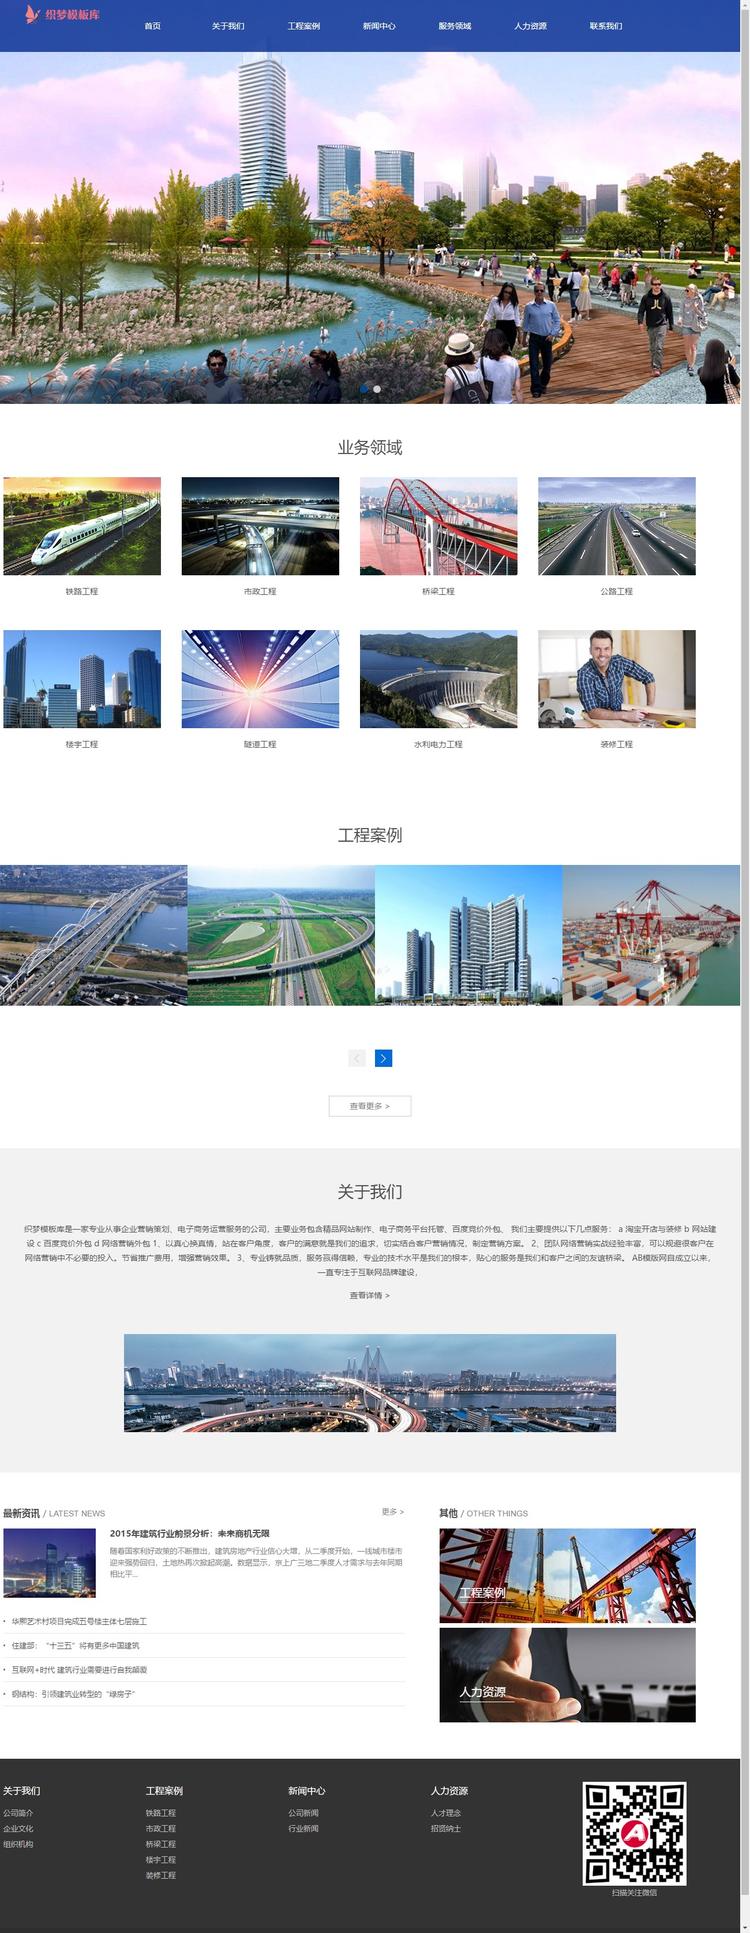 蓝色装修工程建设类企业网站整站模板电脑端演示